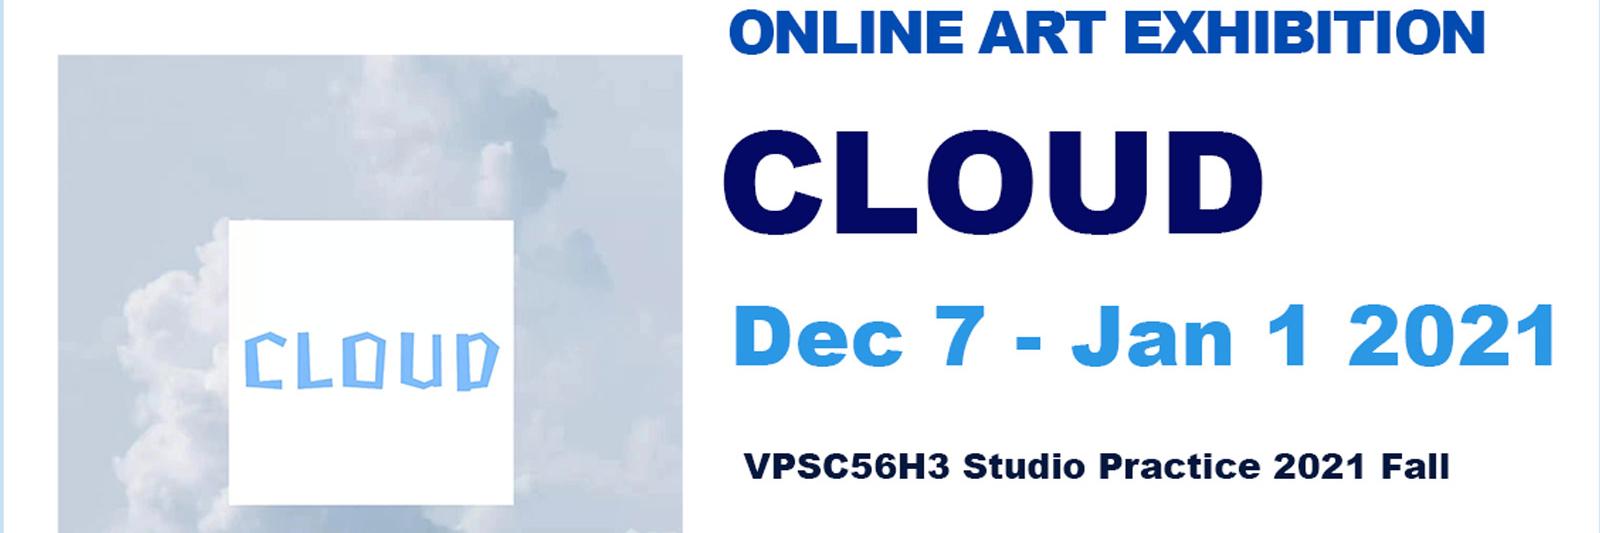 Cloud Exhibition Dec 7 - Jan 1 2021 banner